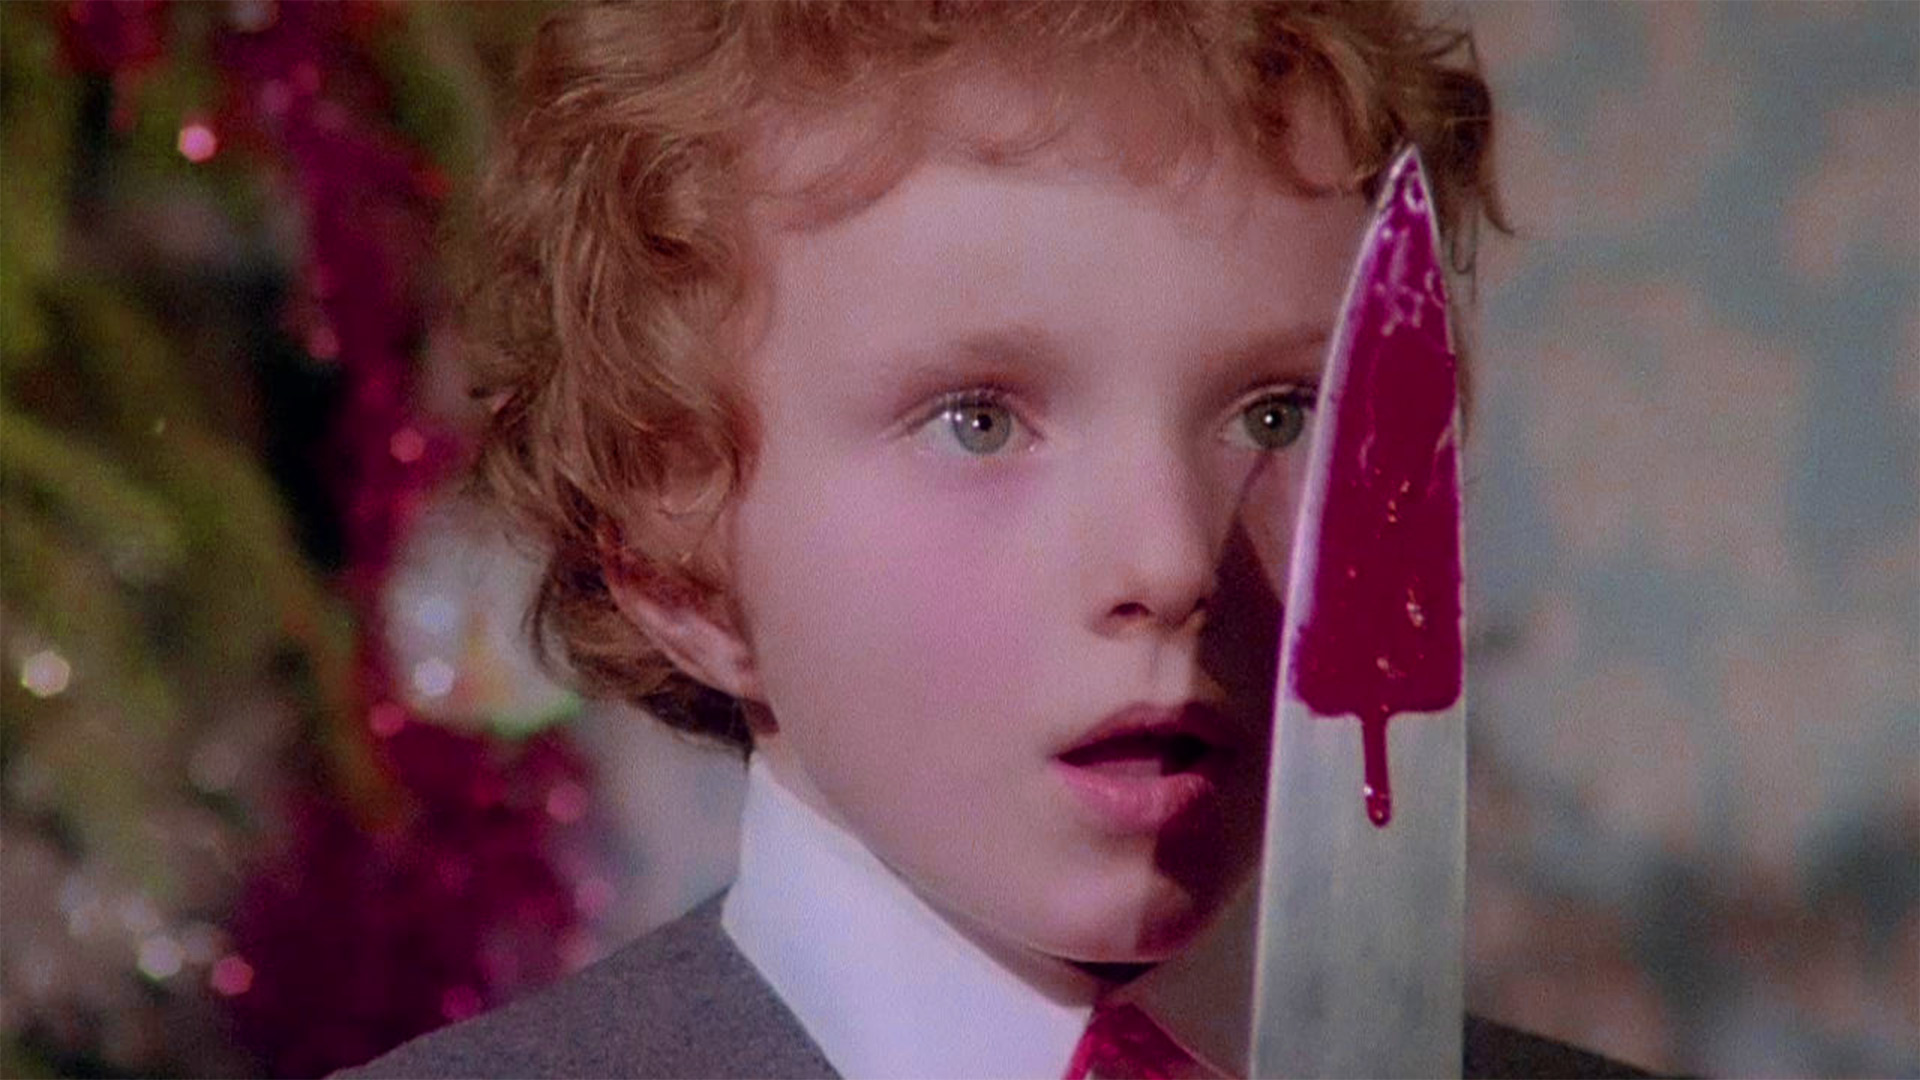 کودک در حال نگاه کردن به چاقو در فیلم قرمز تیره